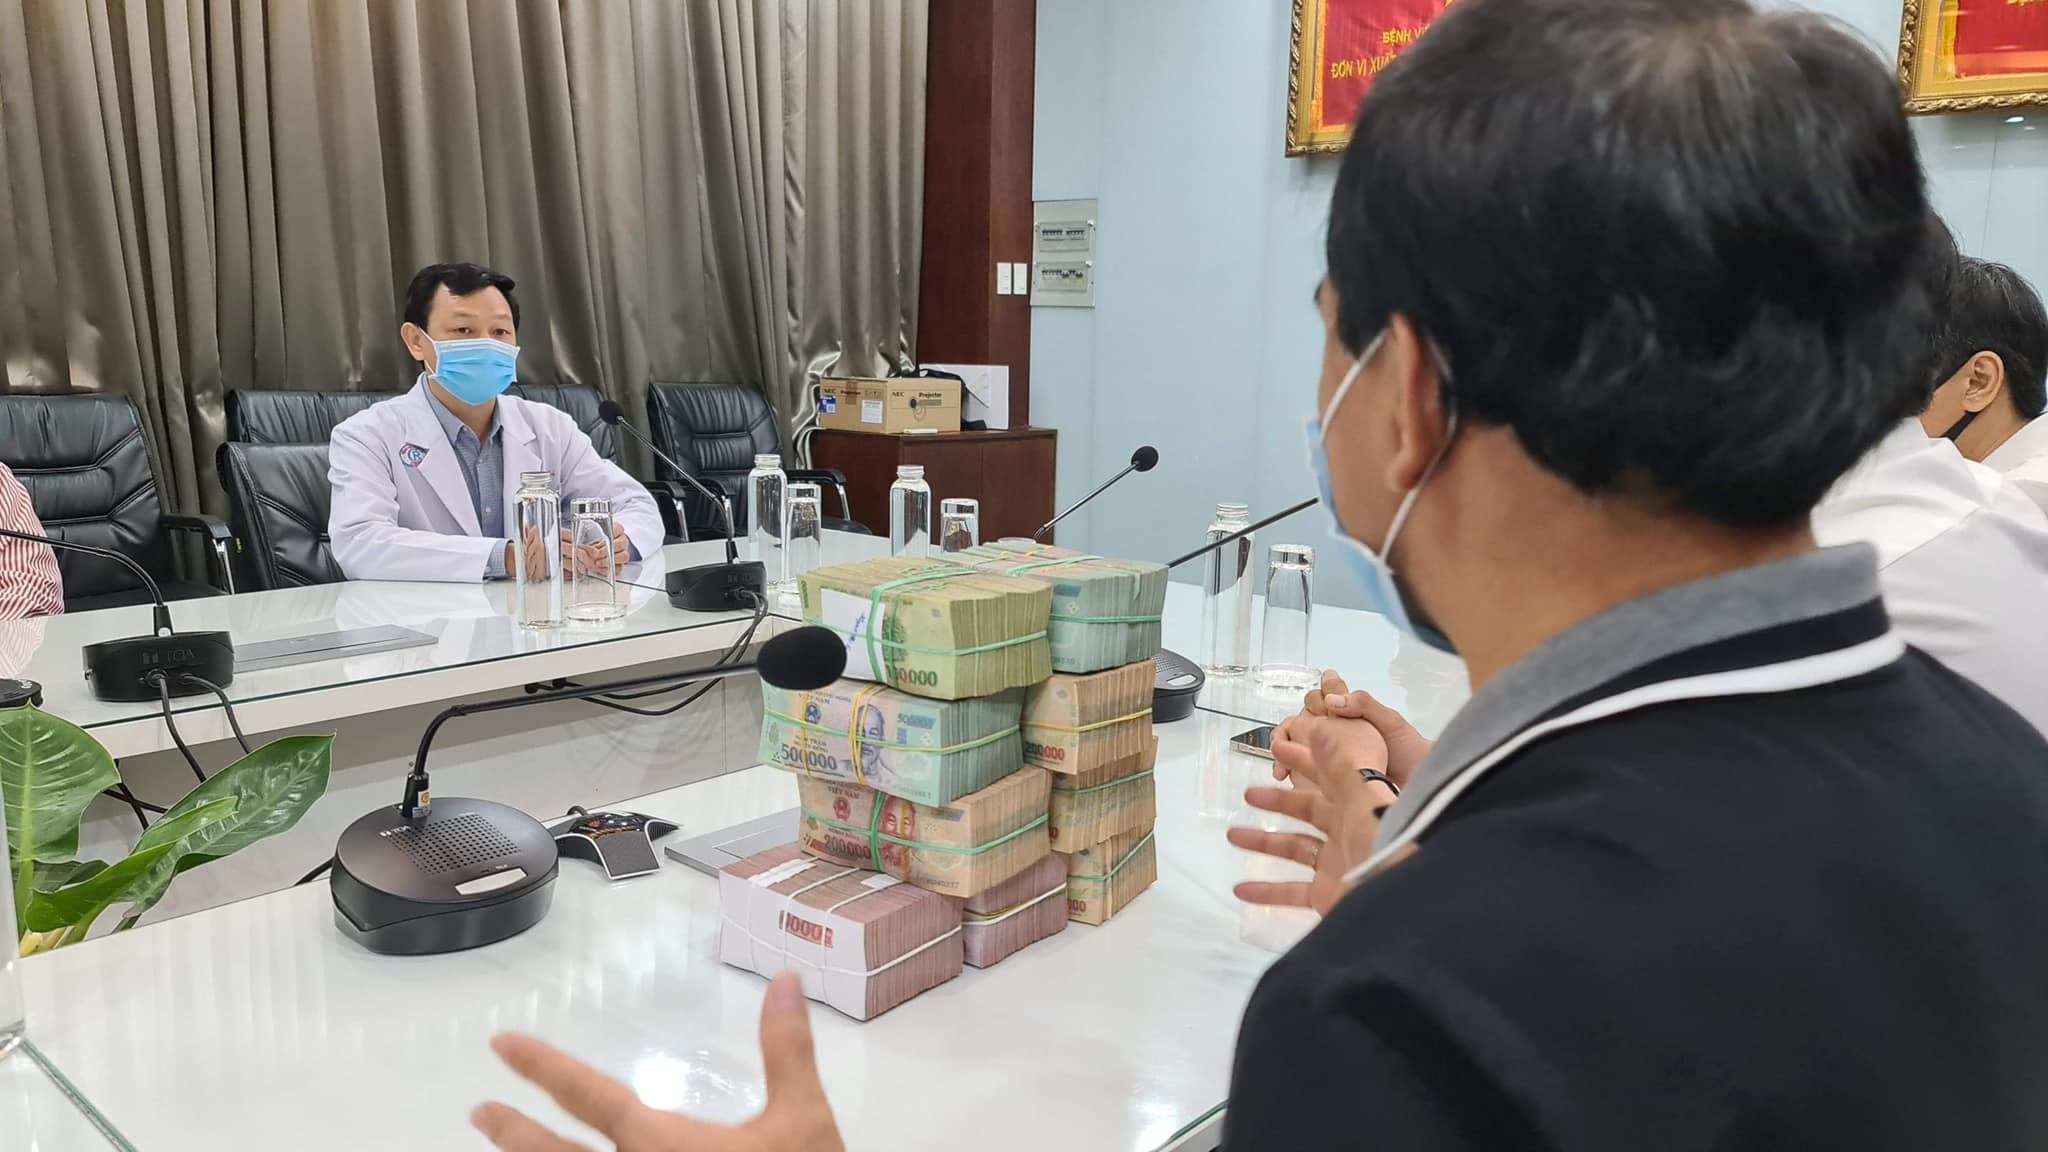 Quyền Linh cùng bạn bè quyên góp 2 tỷ hỗ trợ Bắc Giang chống dịch, CĐM khen ngợi: Không bao giờ làm thất vọng